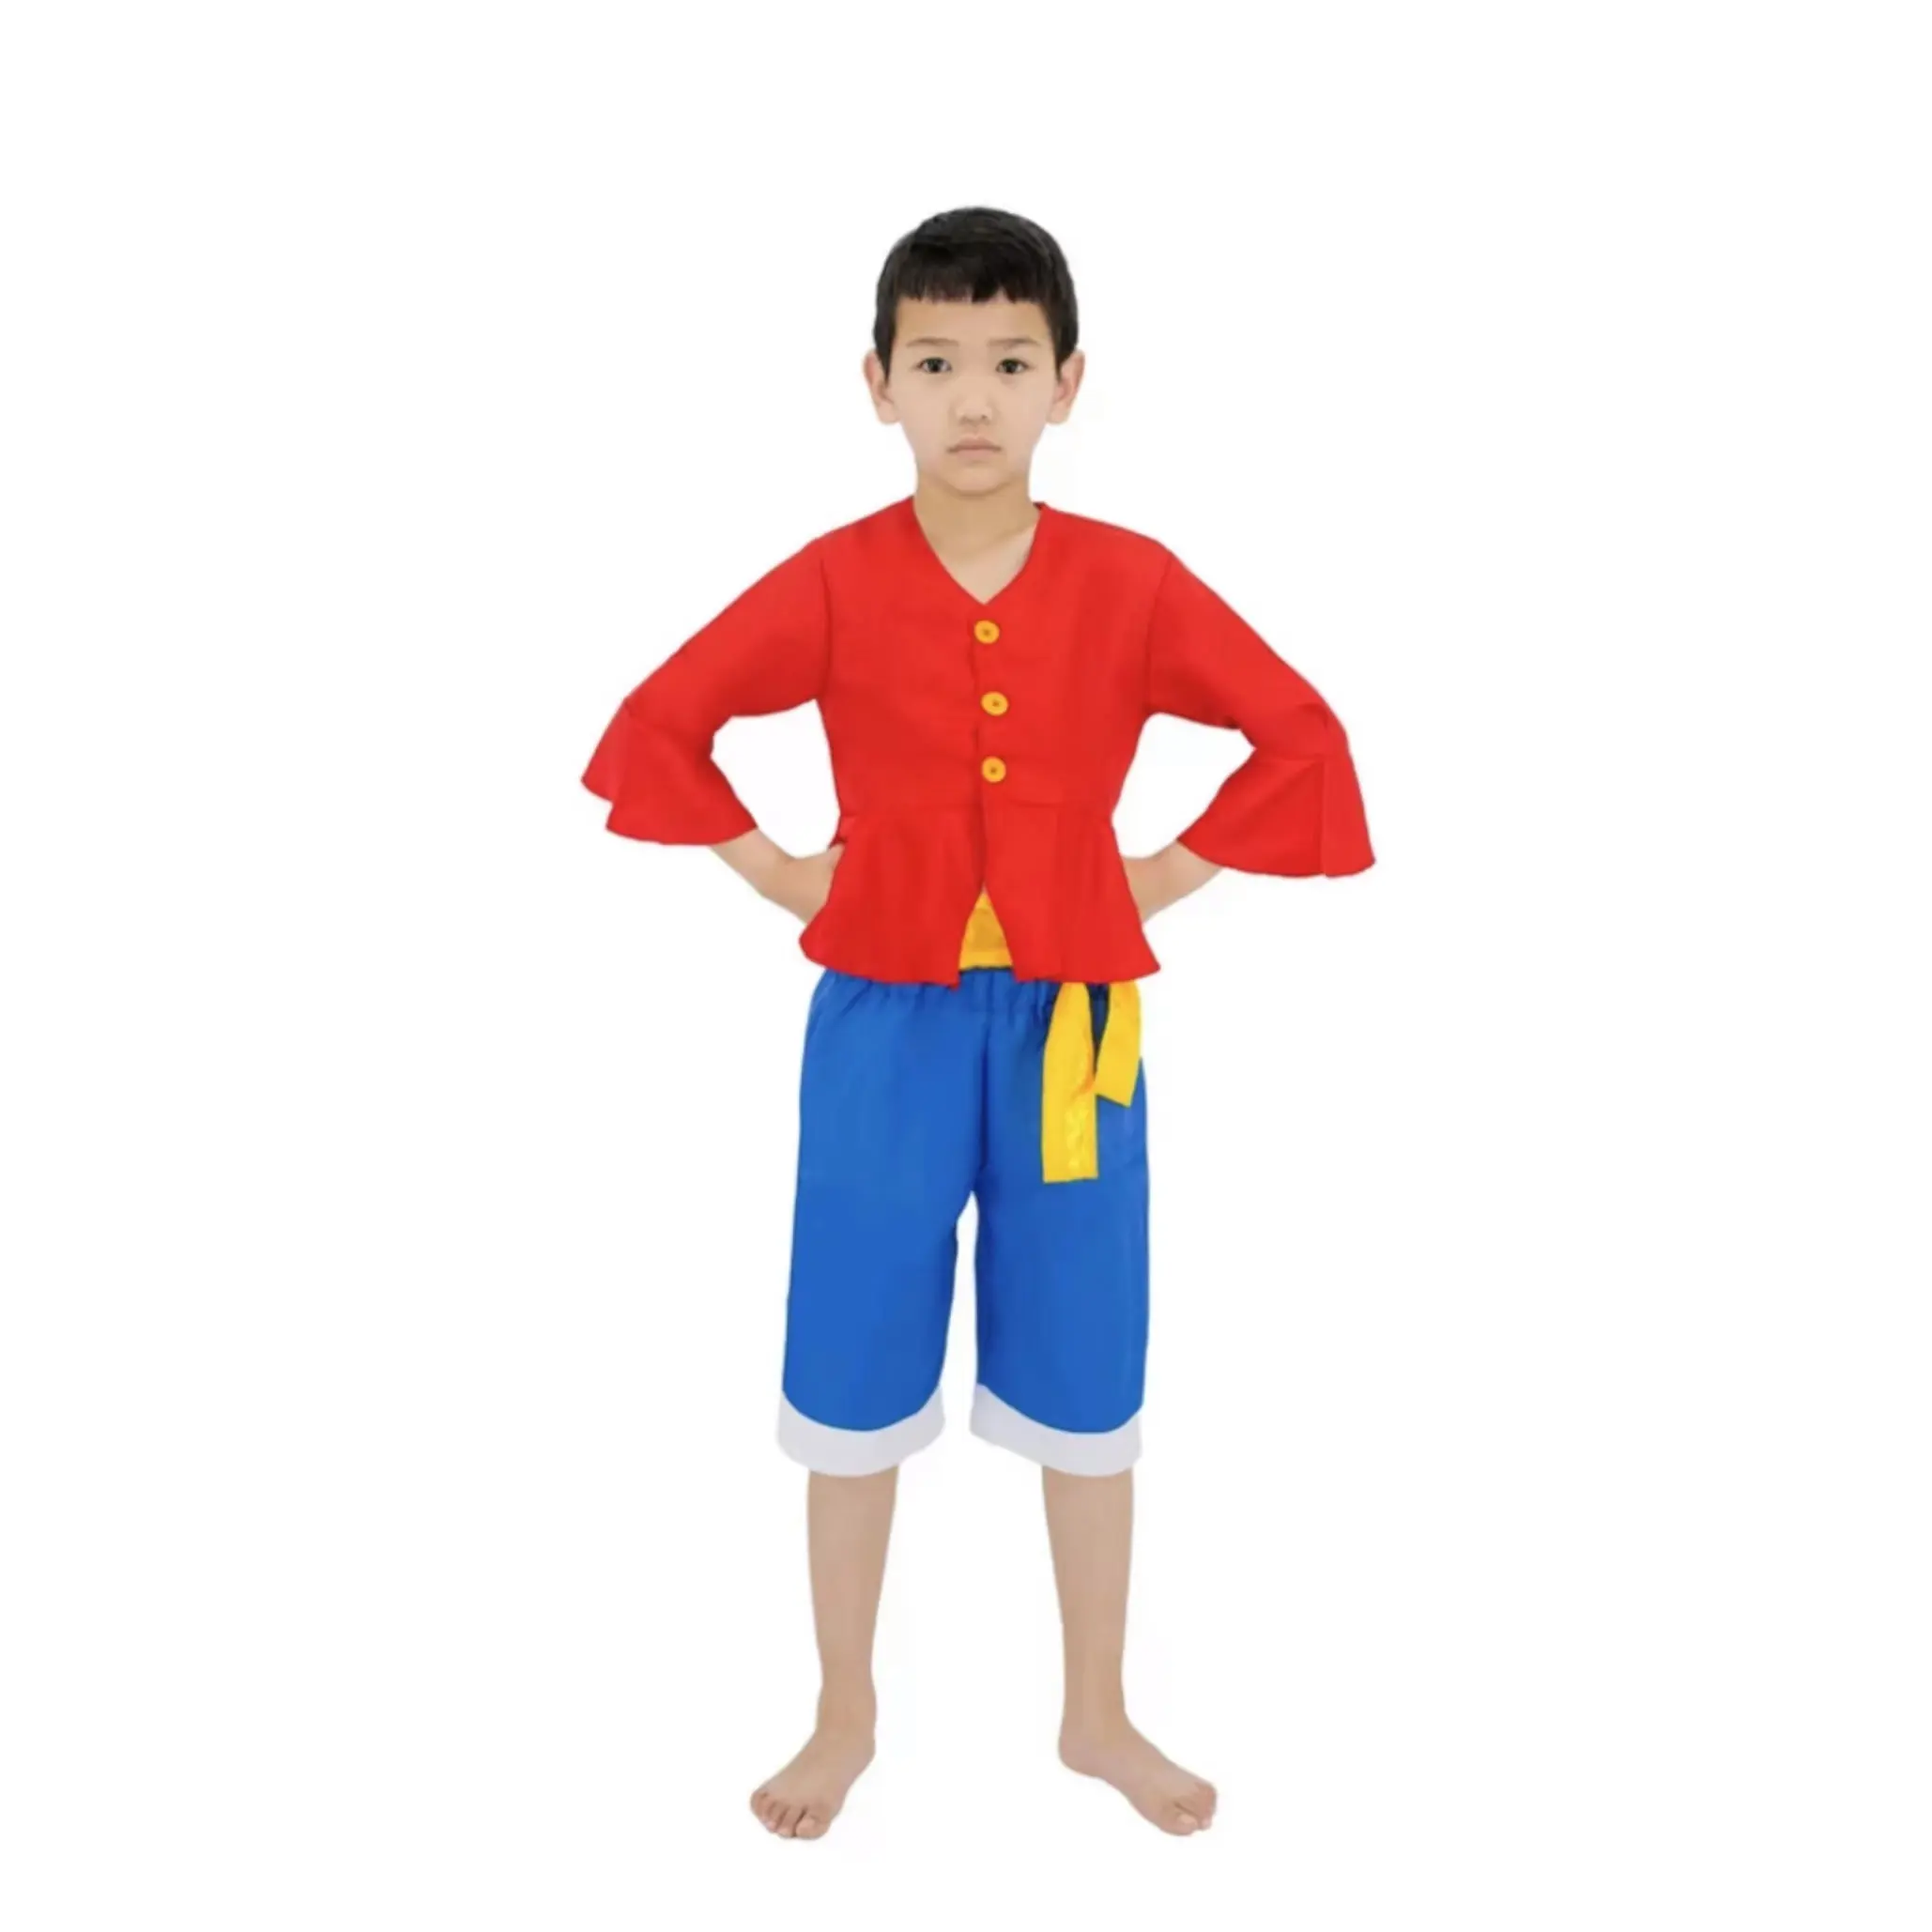 Monkey D. Luffy kostum Cosplay anak, pakaian panggung karakter Anime Jepang untuk pesta Halloween, setelan pantai anak laki-laki